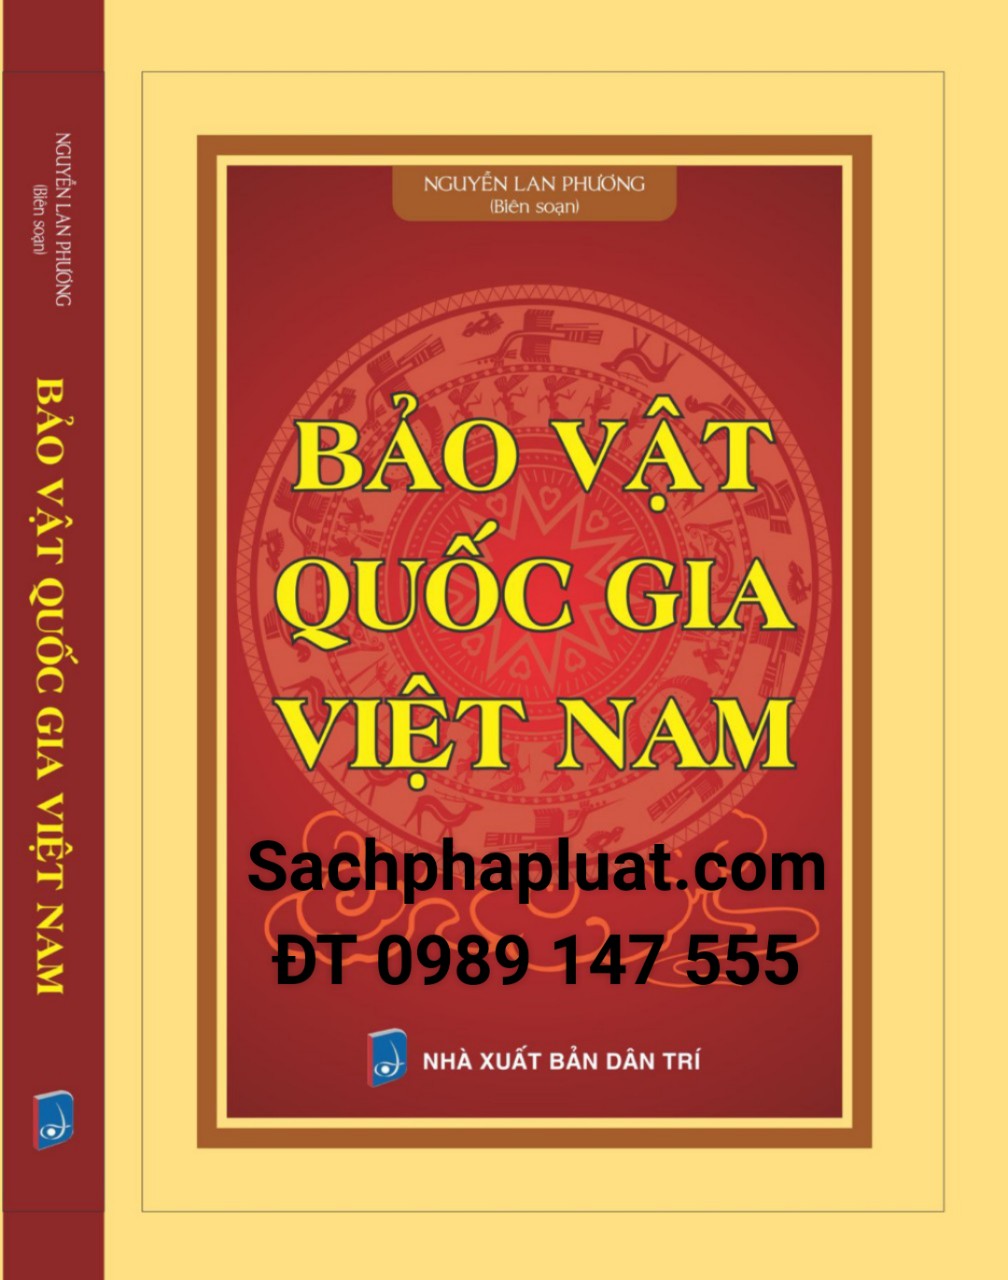 Bảo vật quốc gia Việt Nam